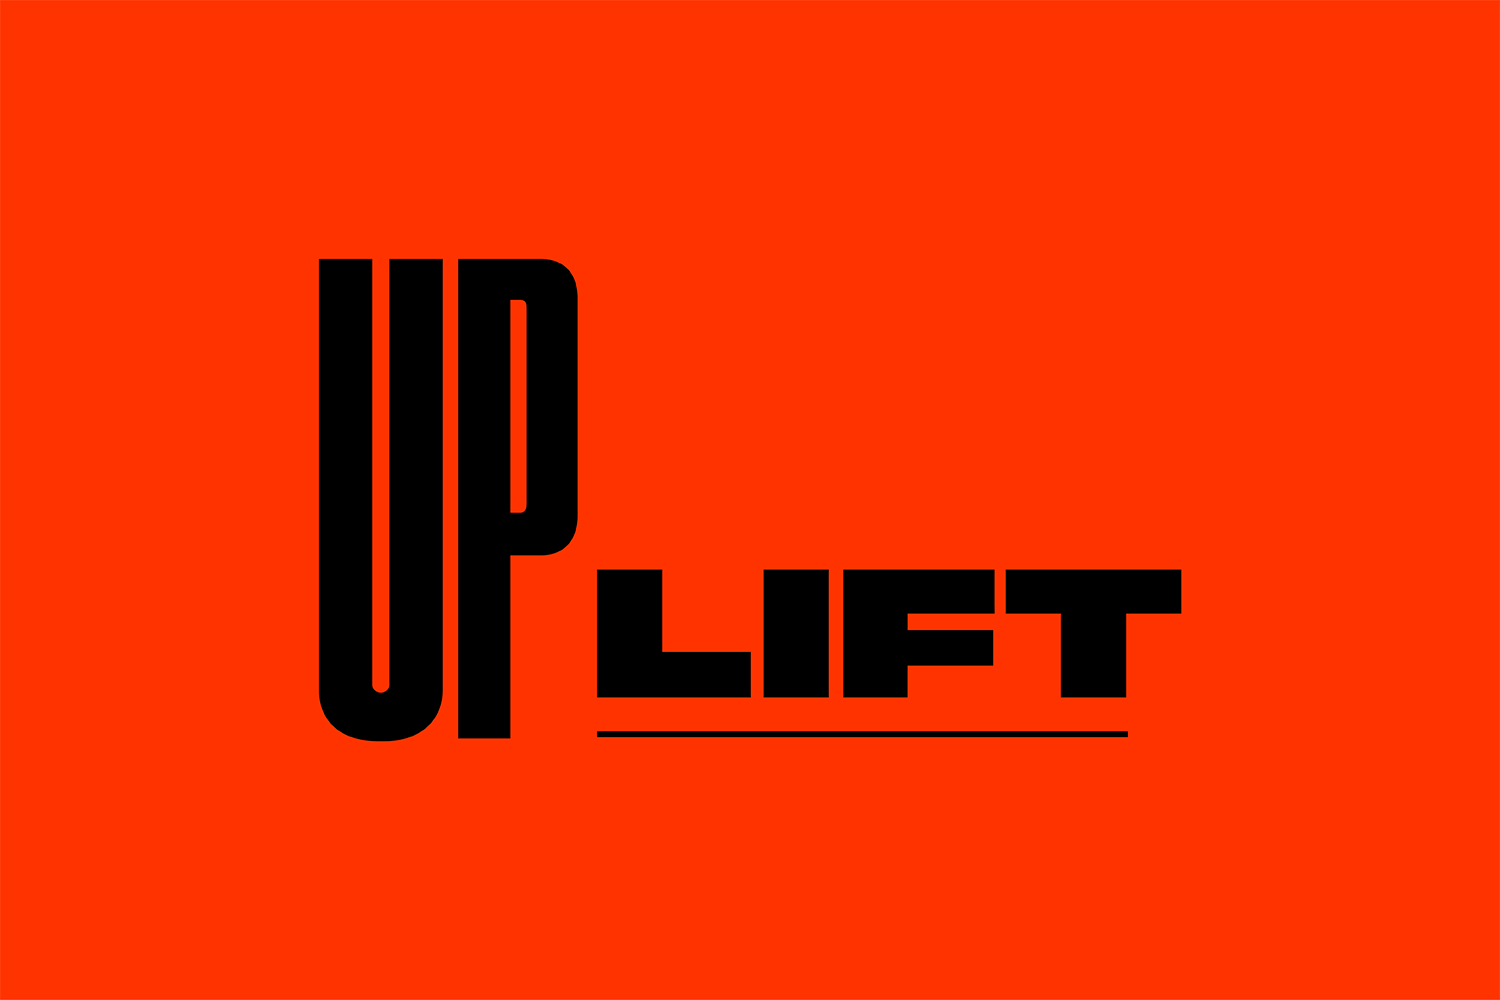 Uplift_2.gif